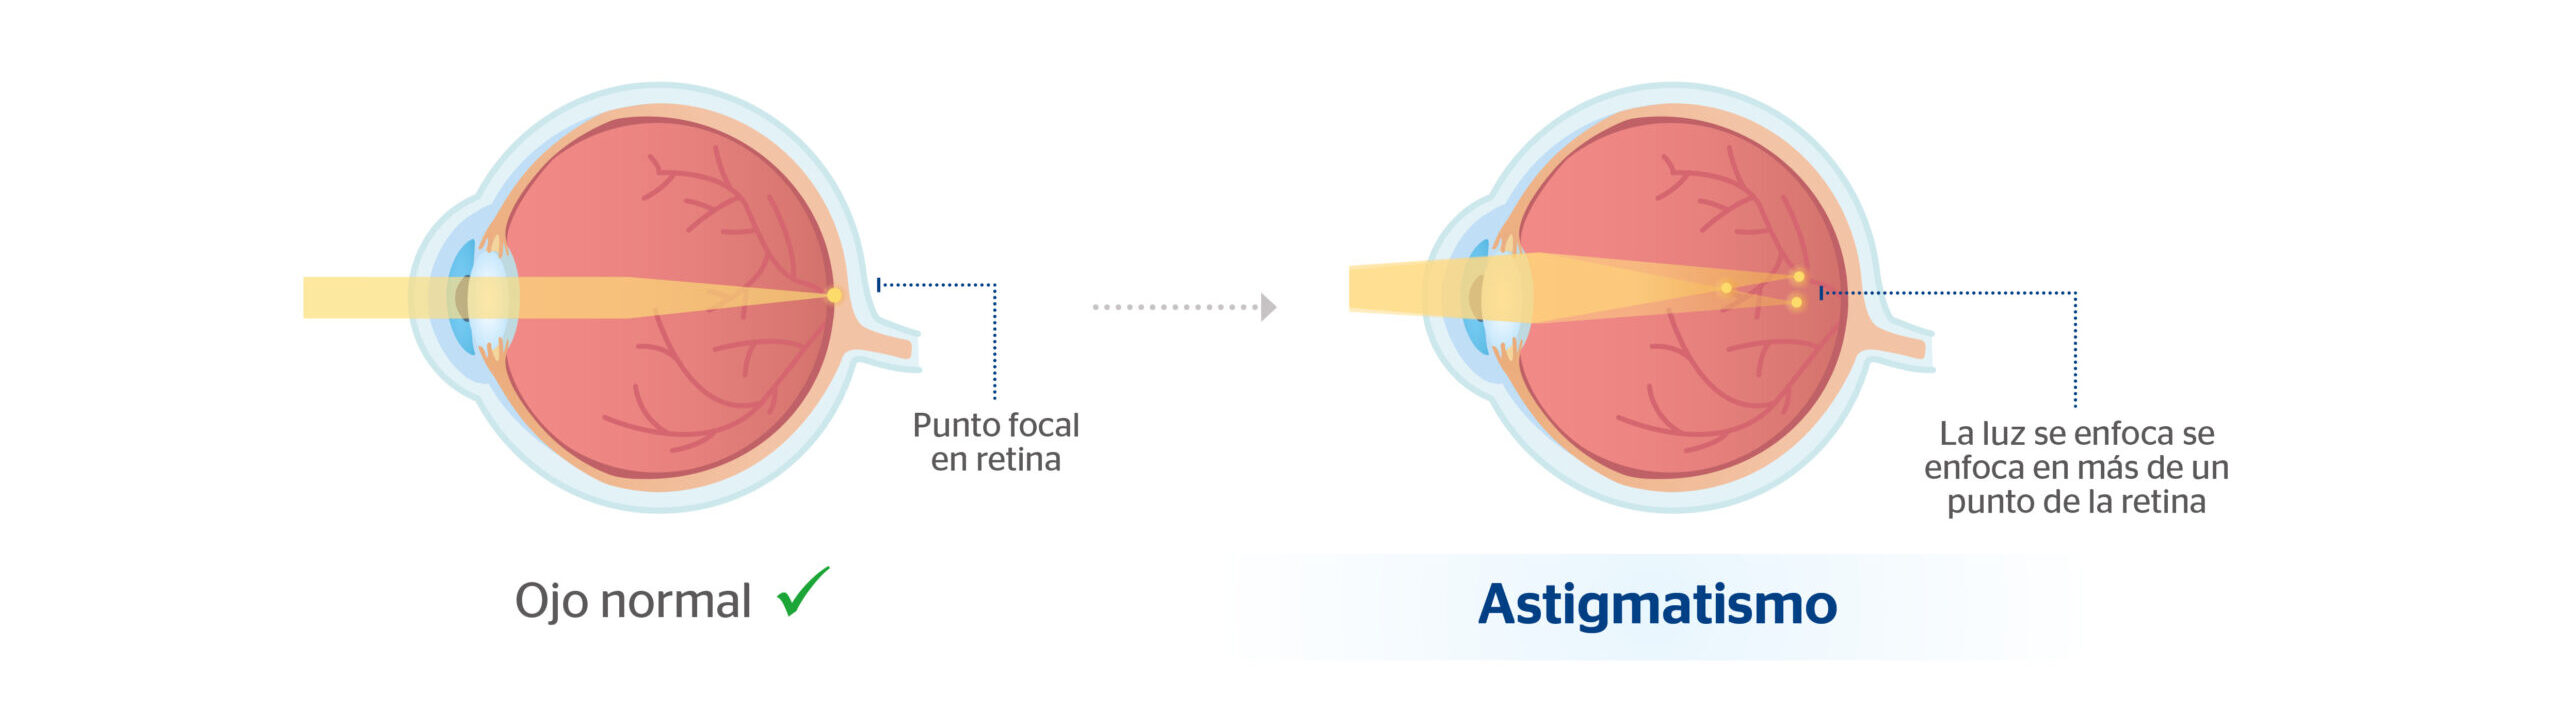 Qué es el astigmatismo